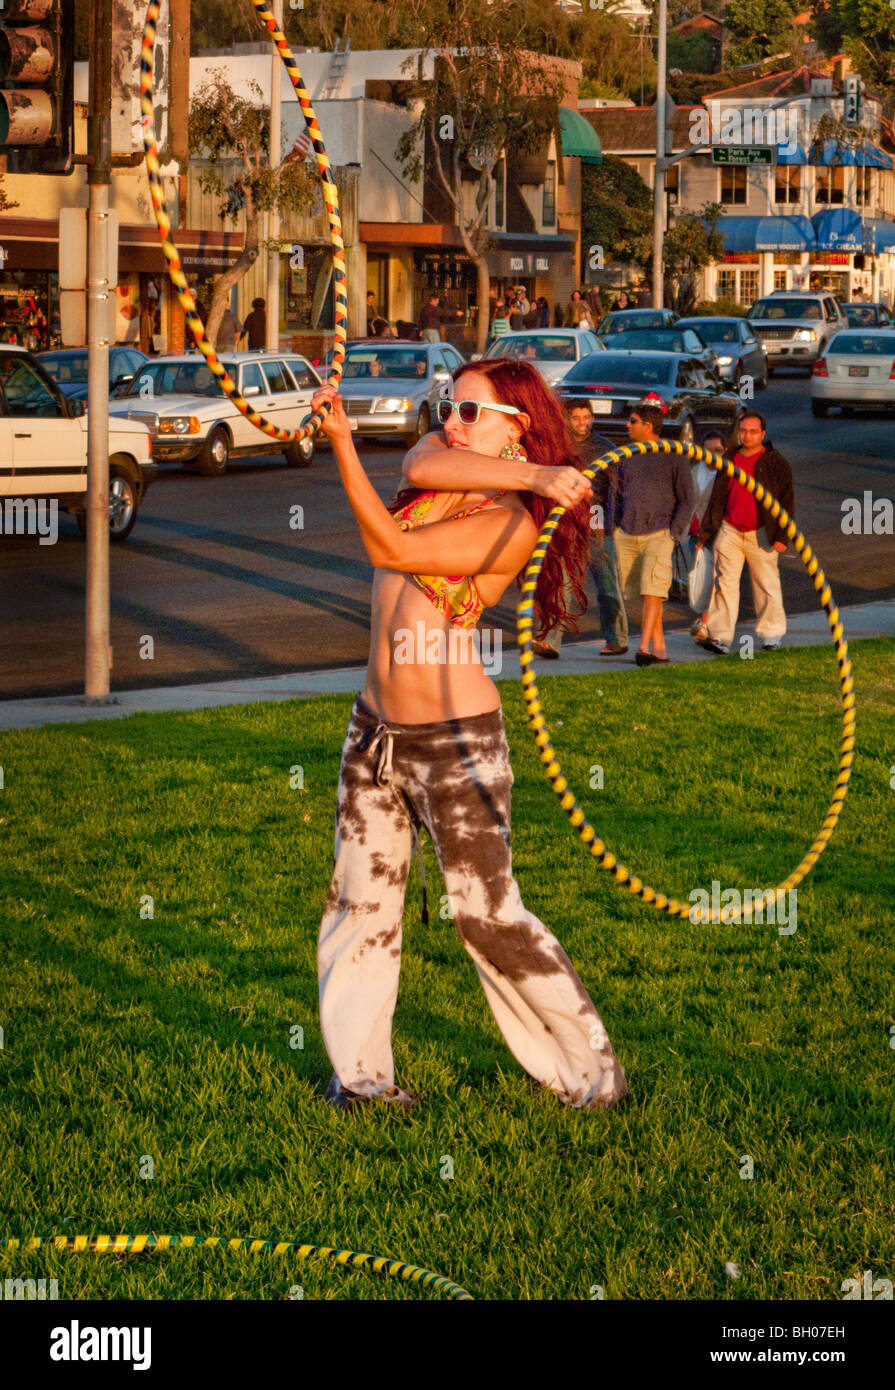 Un amateur de hula hoop est titulaire d'une "session" Hoopnosis en fin d'après-midi à côté de la Pacific Coast Highway à Laguna Beach, CA Banque D'Images